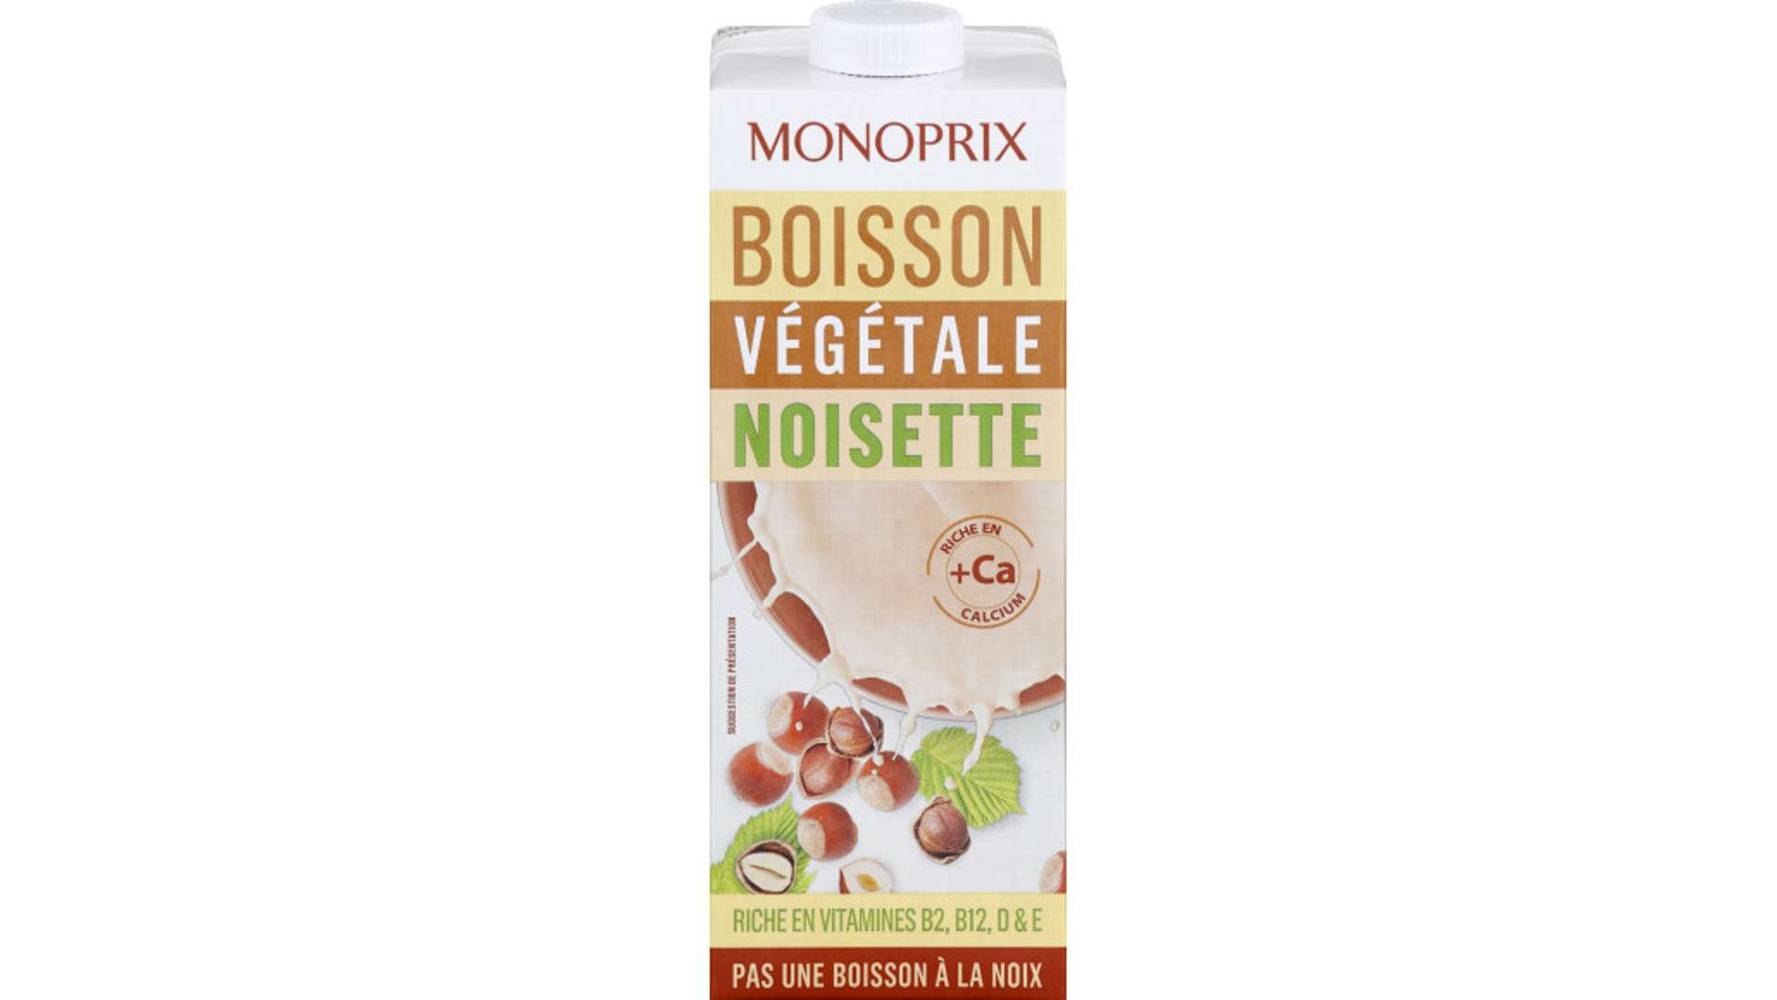 Monoprix Boisson végétale noisette La brique de 1 l